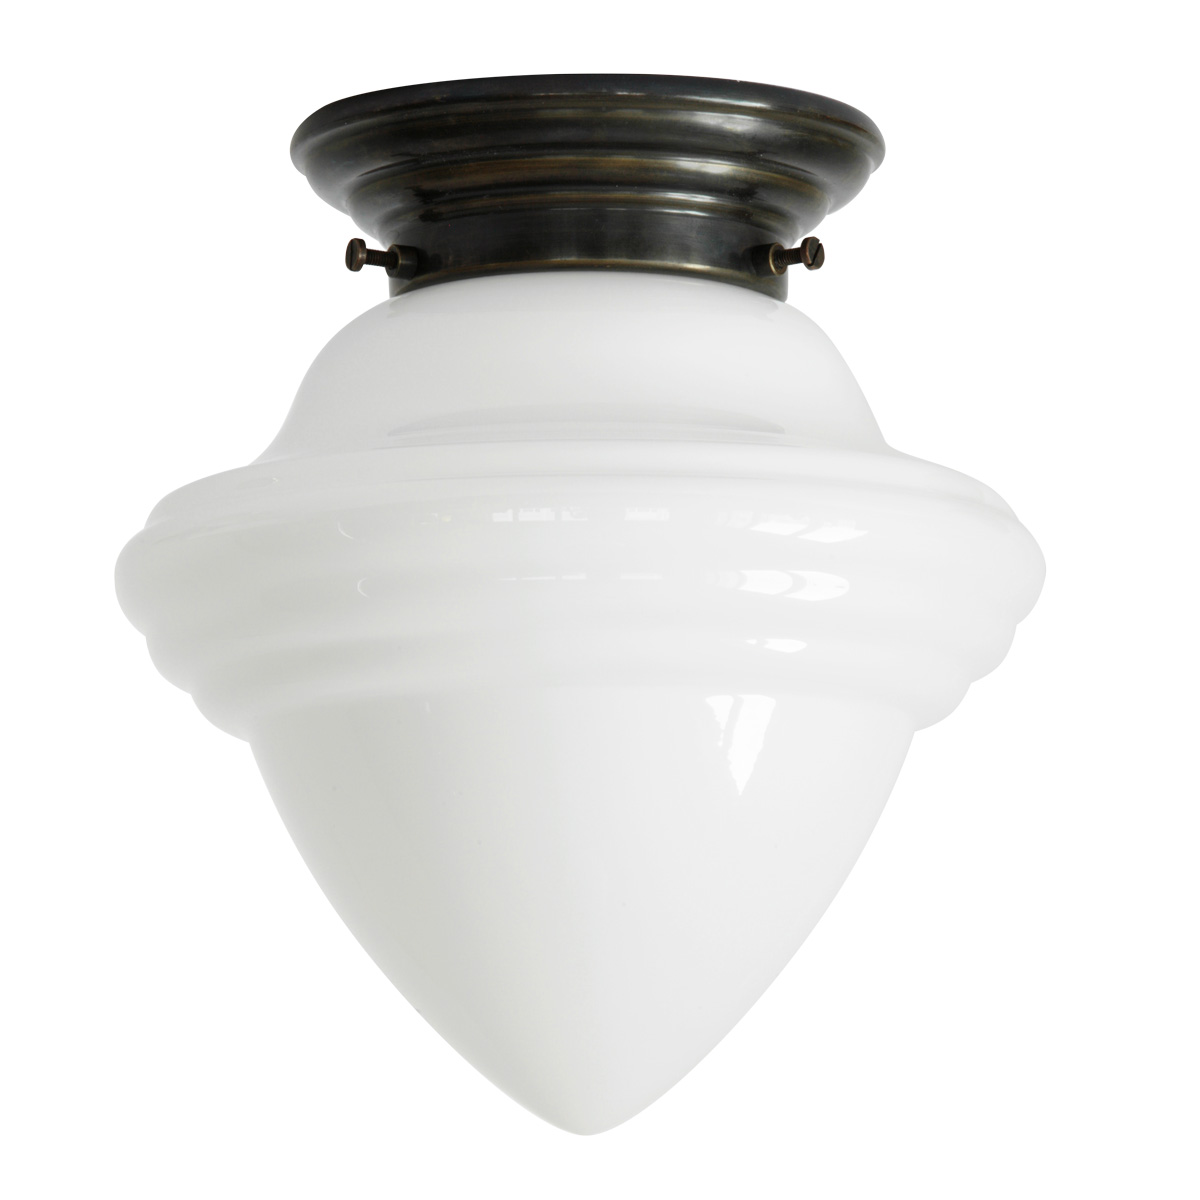 Kleine Deckenlampe mit spitzem Art déco-Opalglas Ø 16 cm: Deckenleuchte, abgebildet mit dezent gestuftem Deckenteil in Messing patiniert